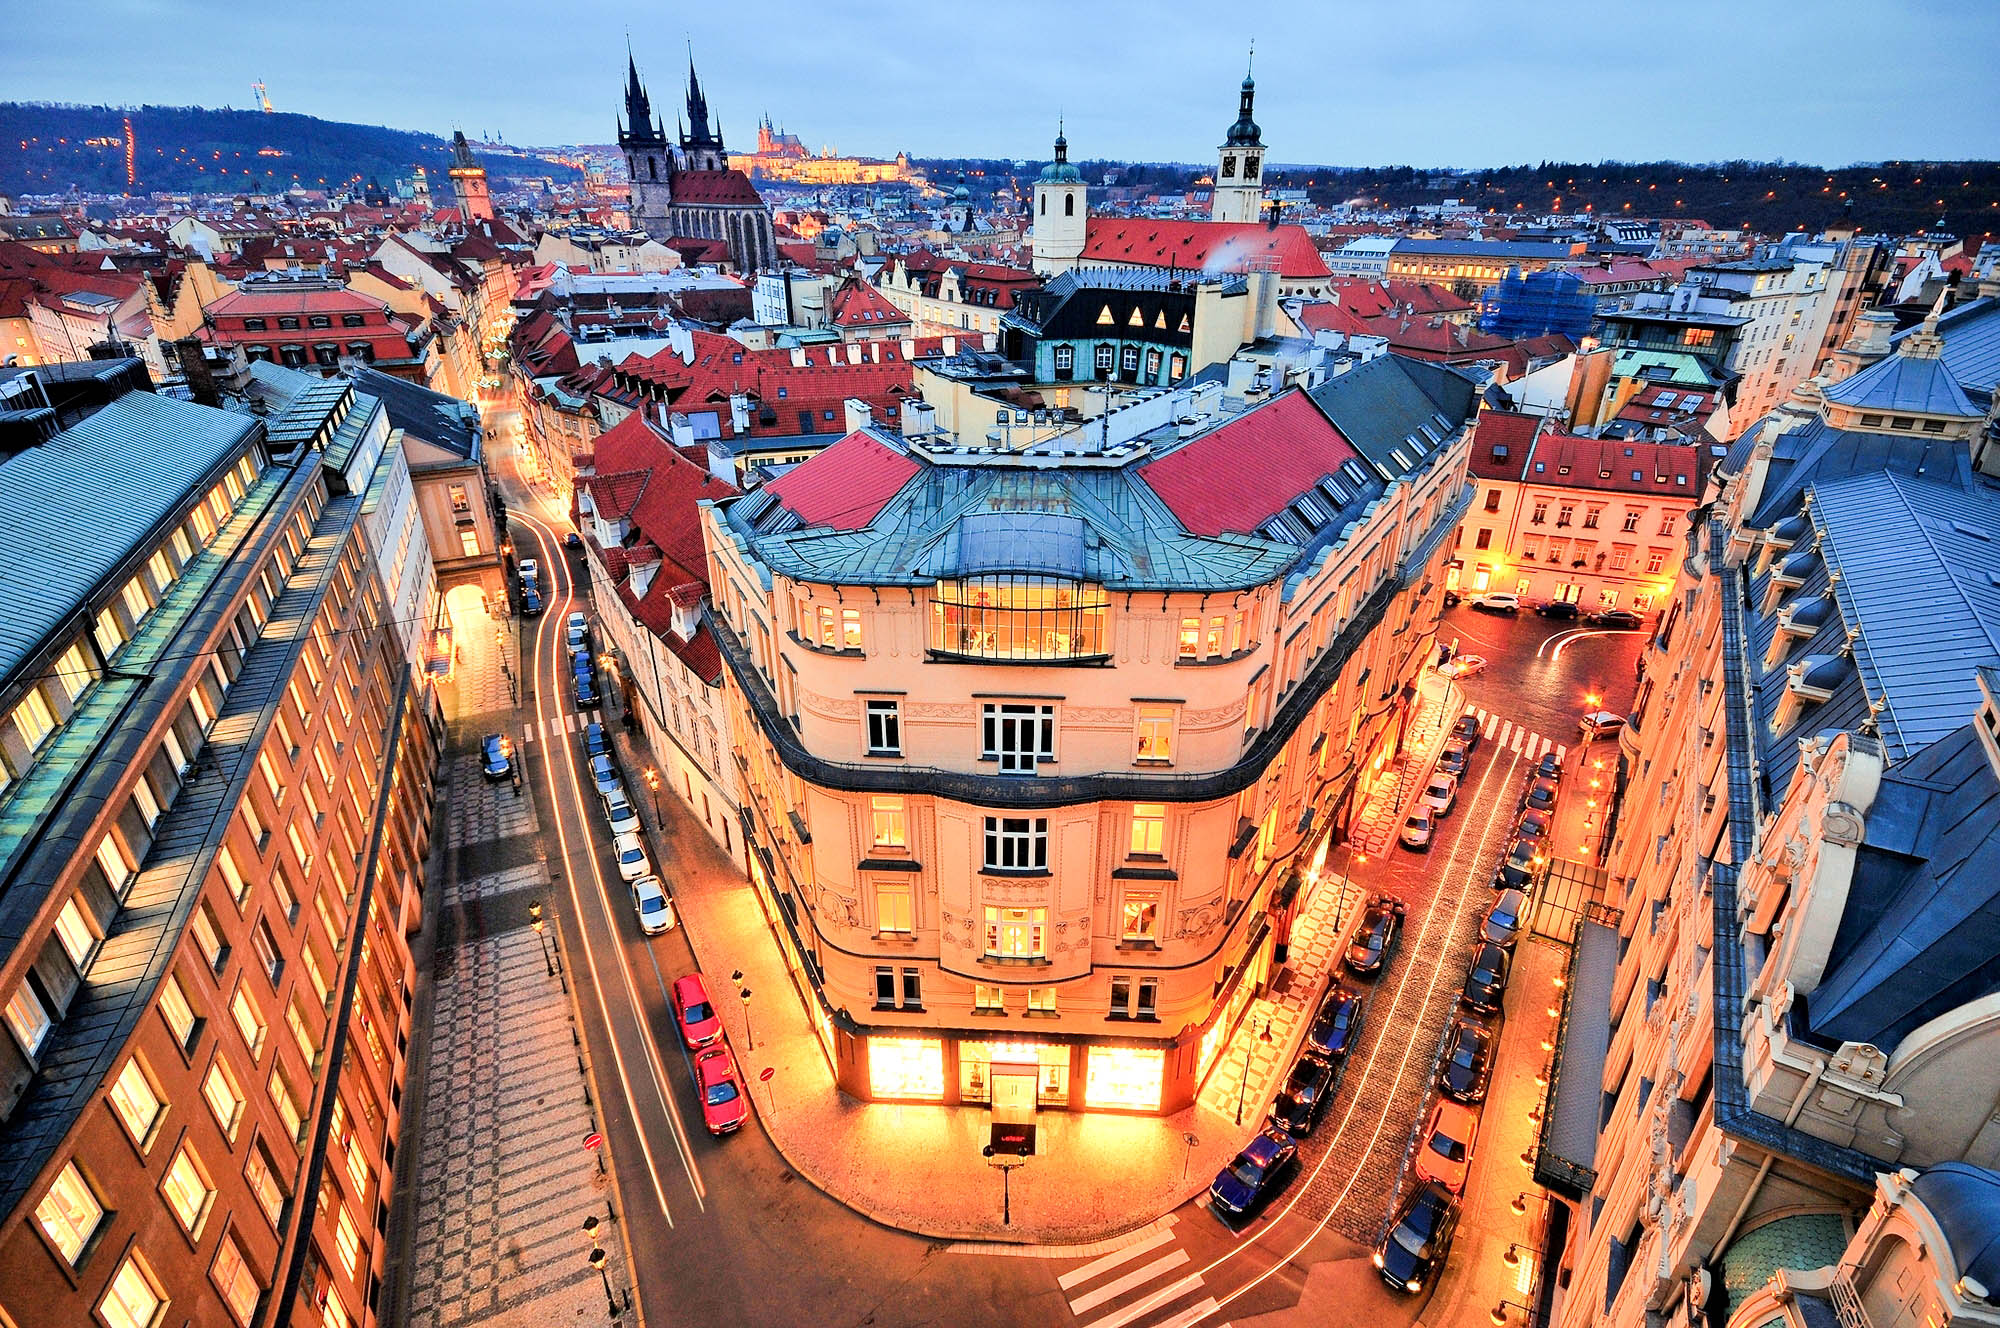 Prague at Dusk